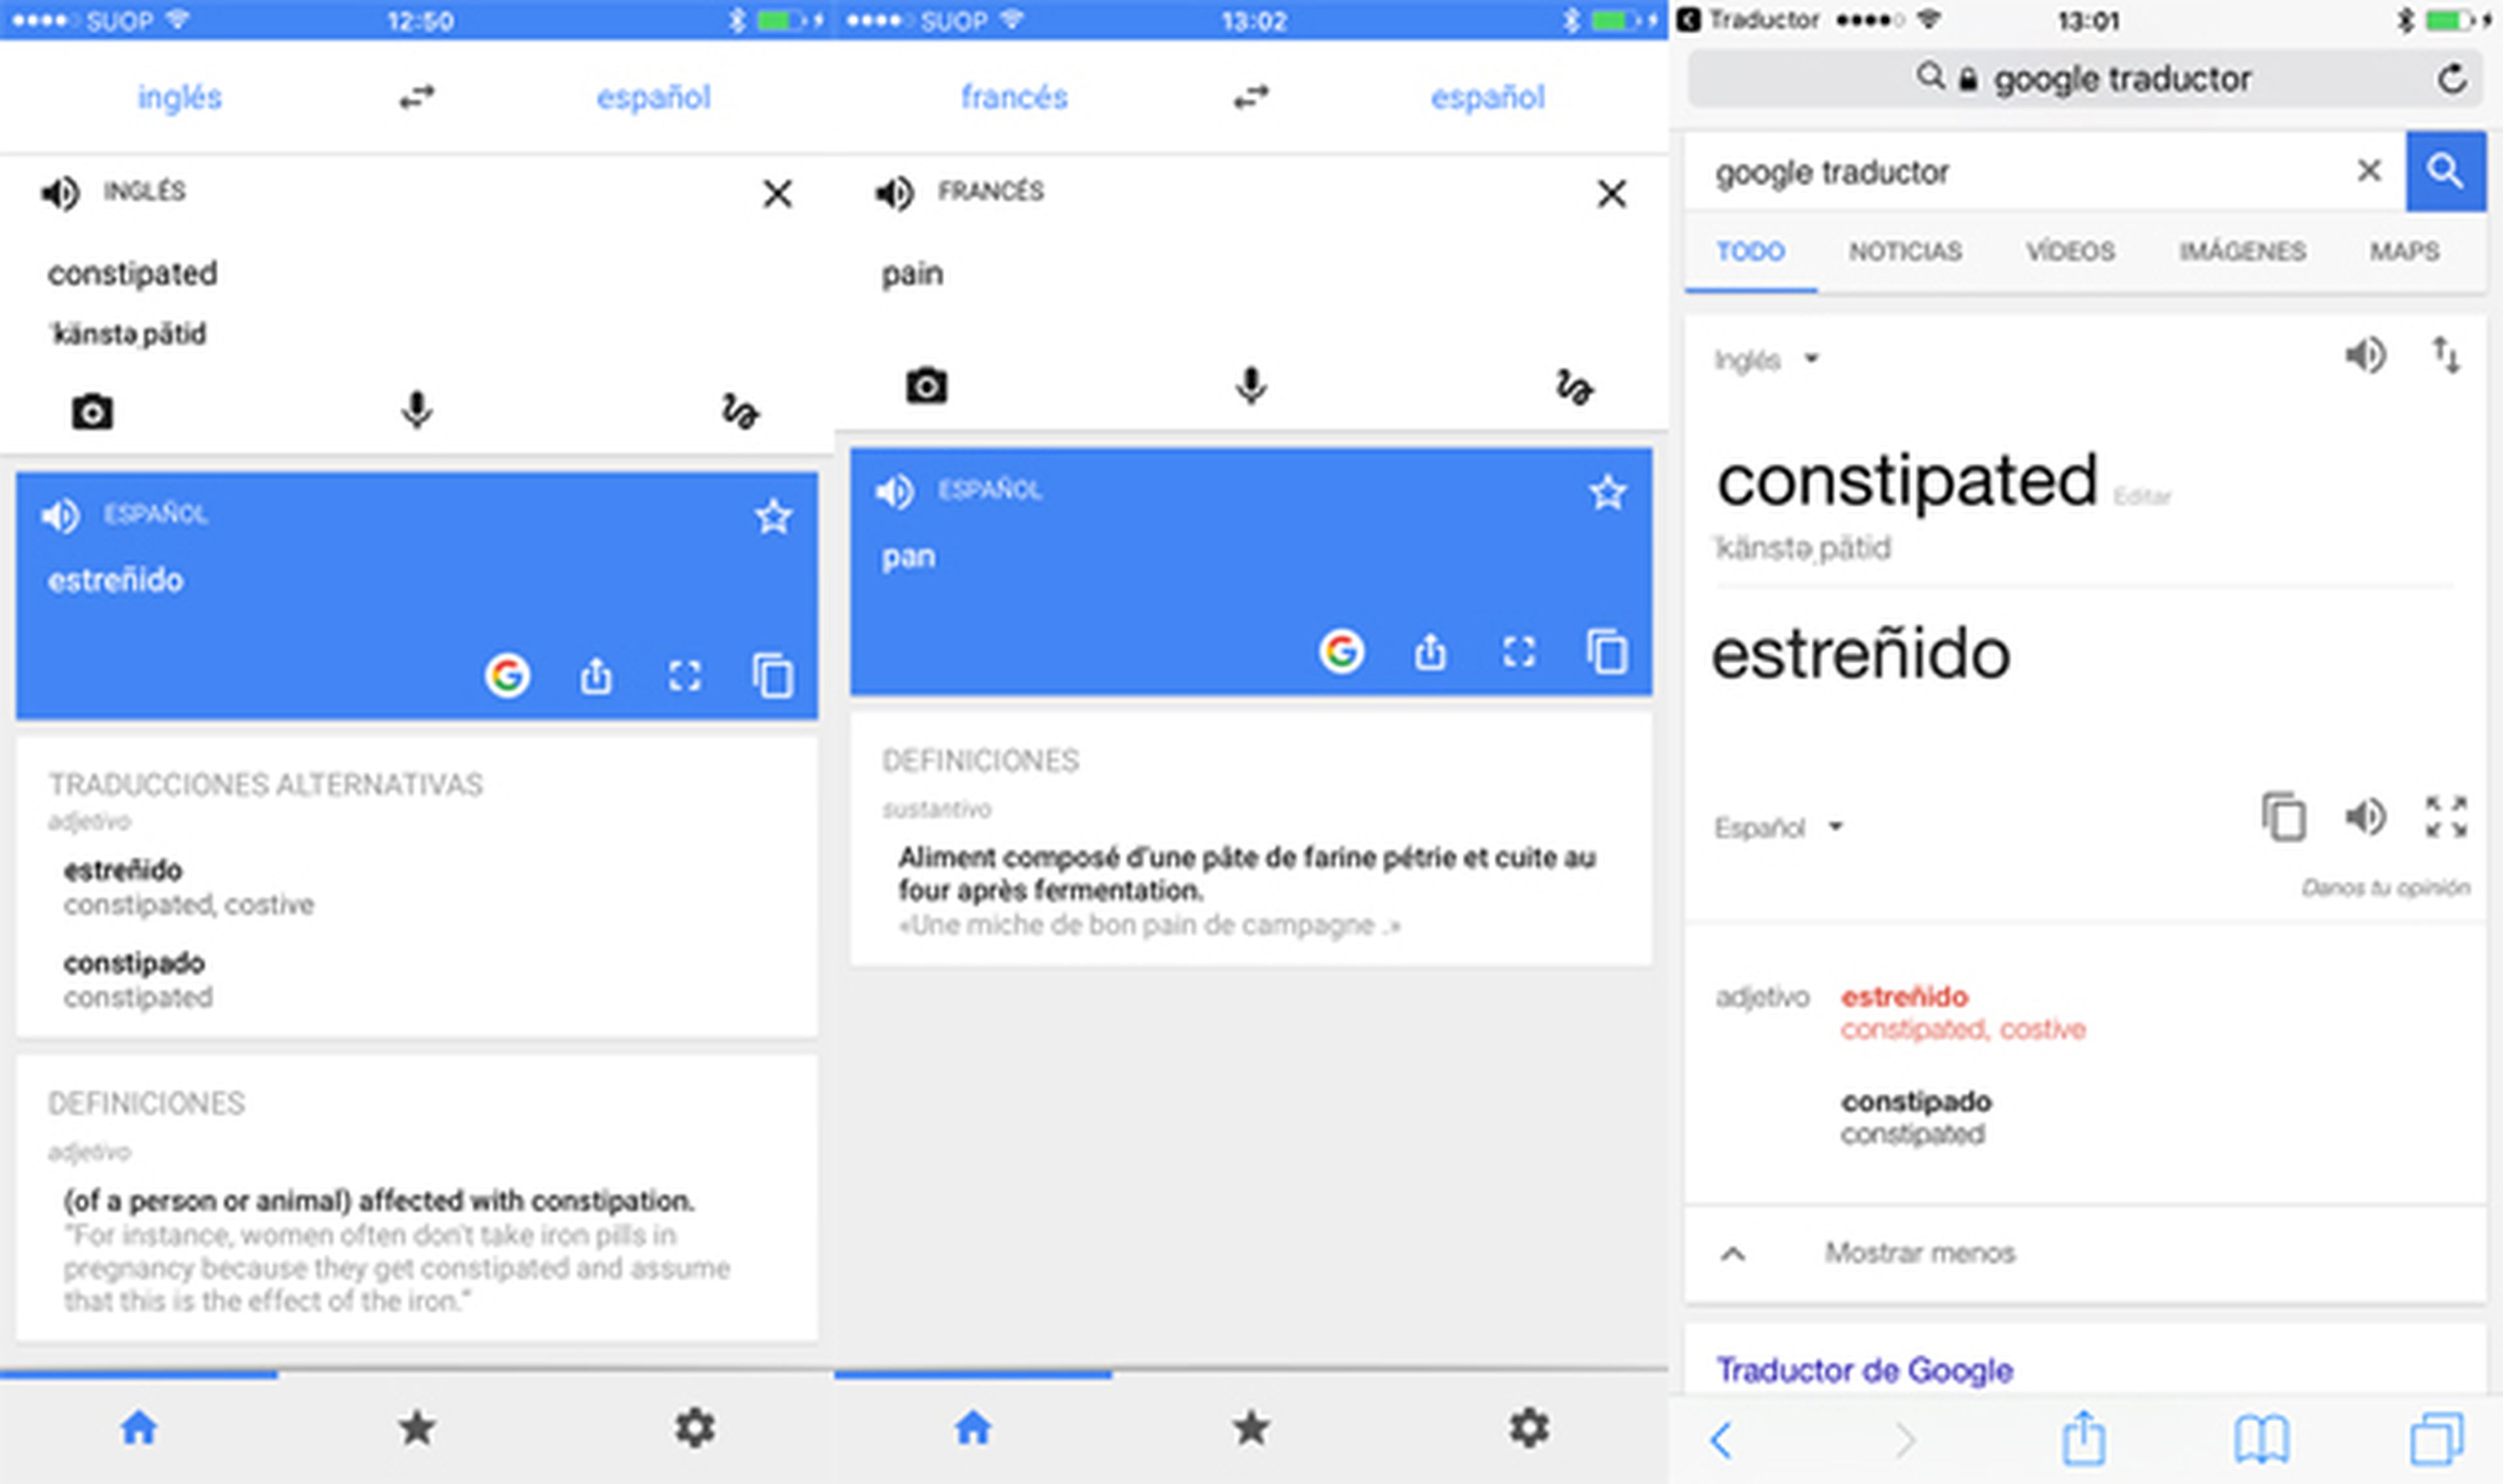 El Traductor de Google ahora tiene, además de sinónimos, definiciones